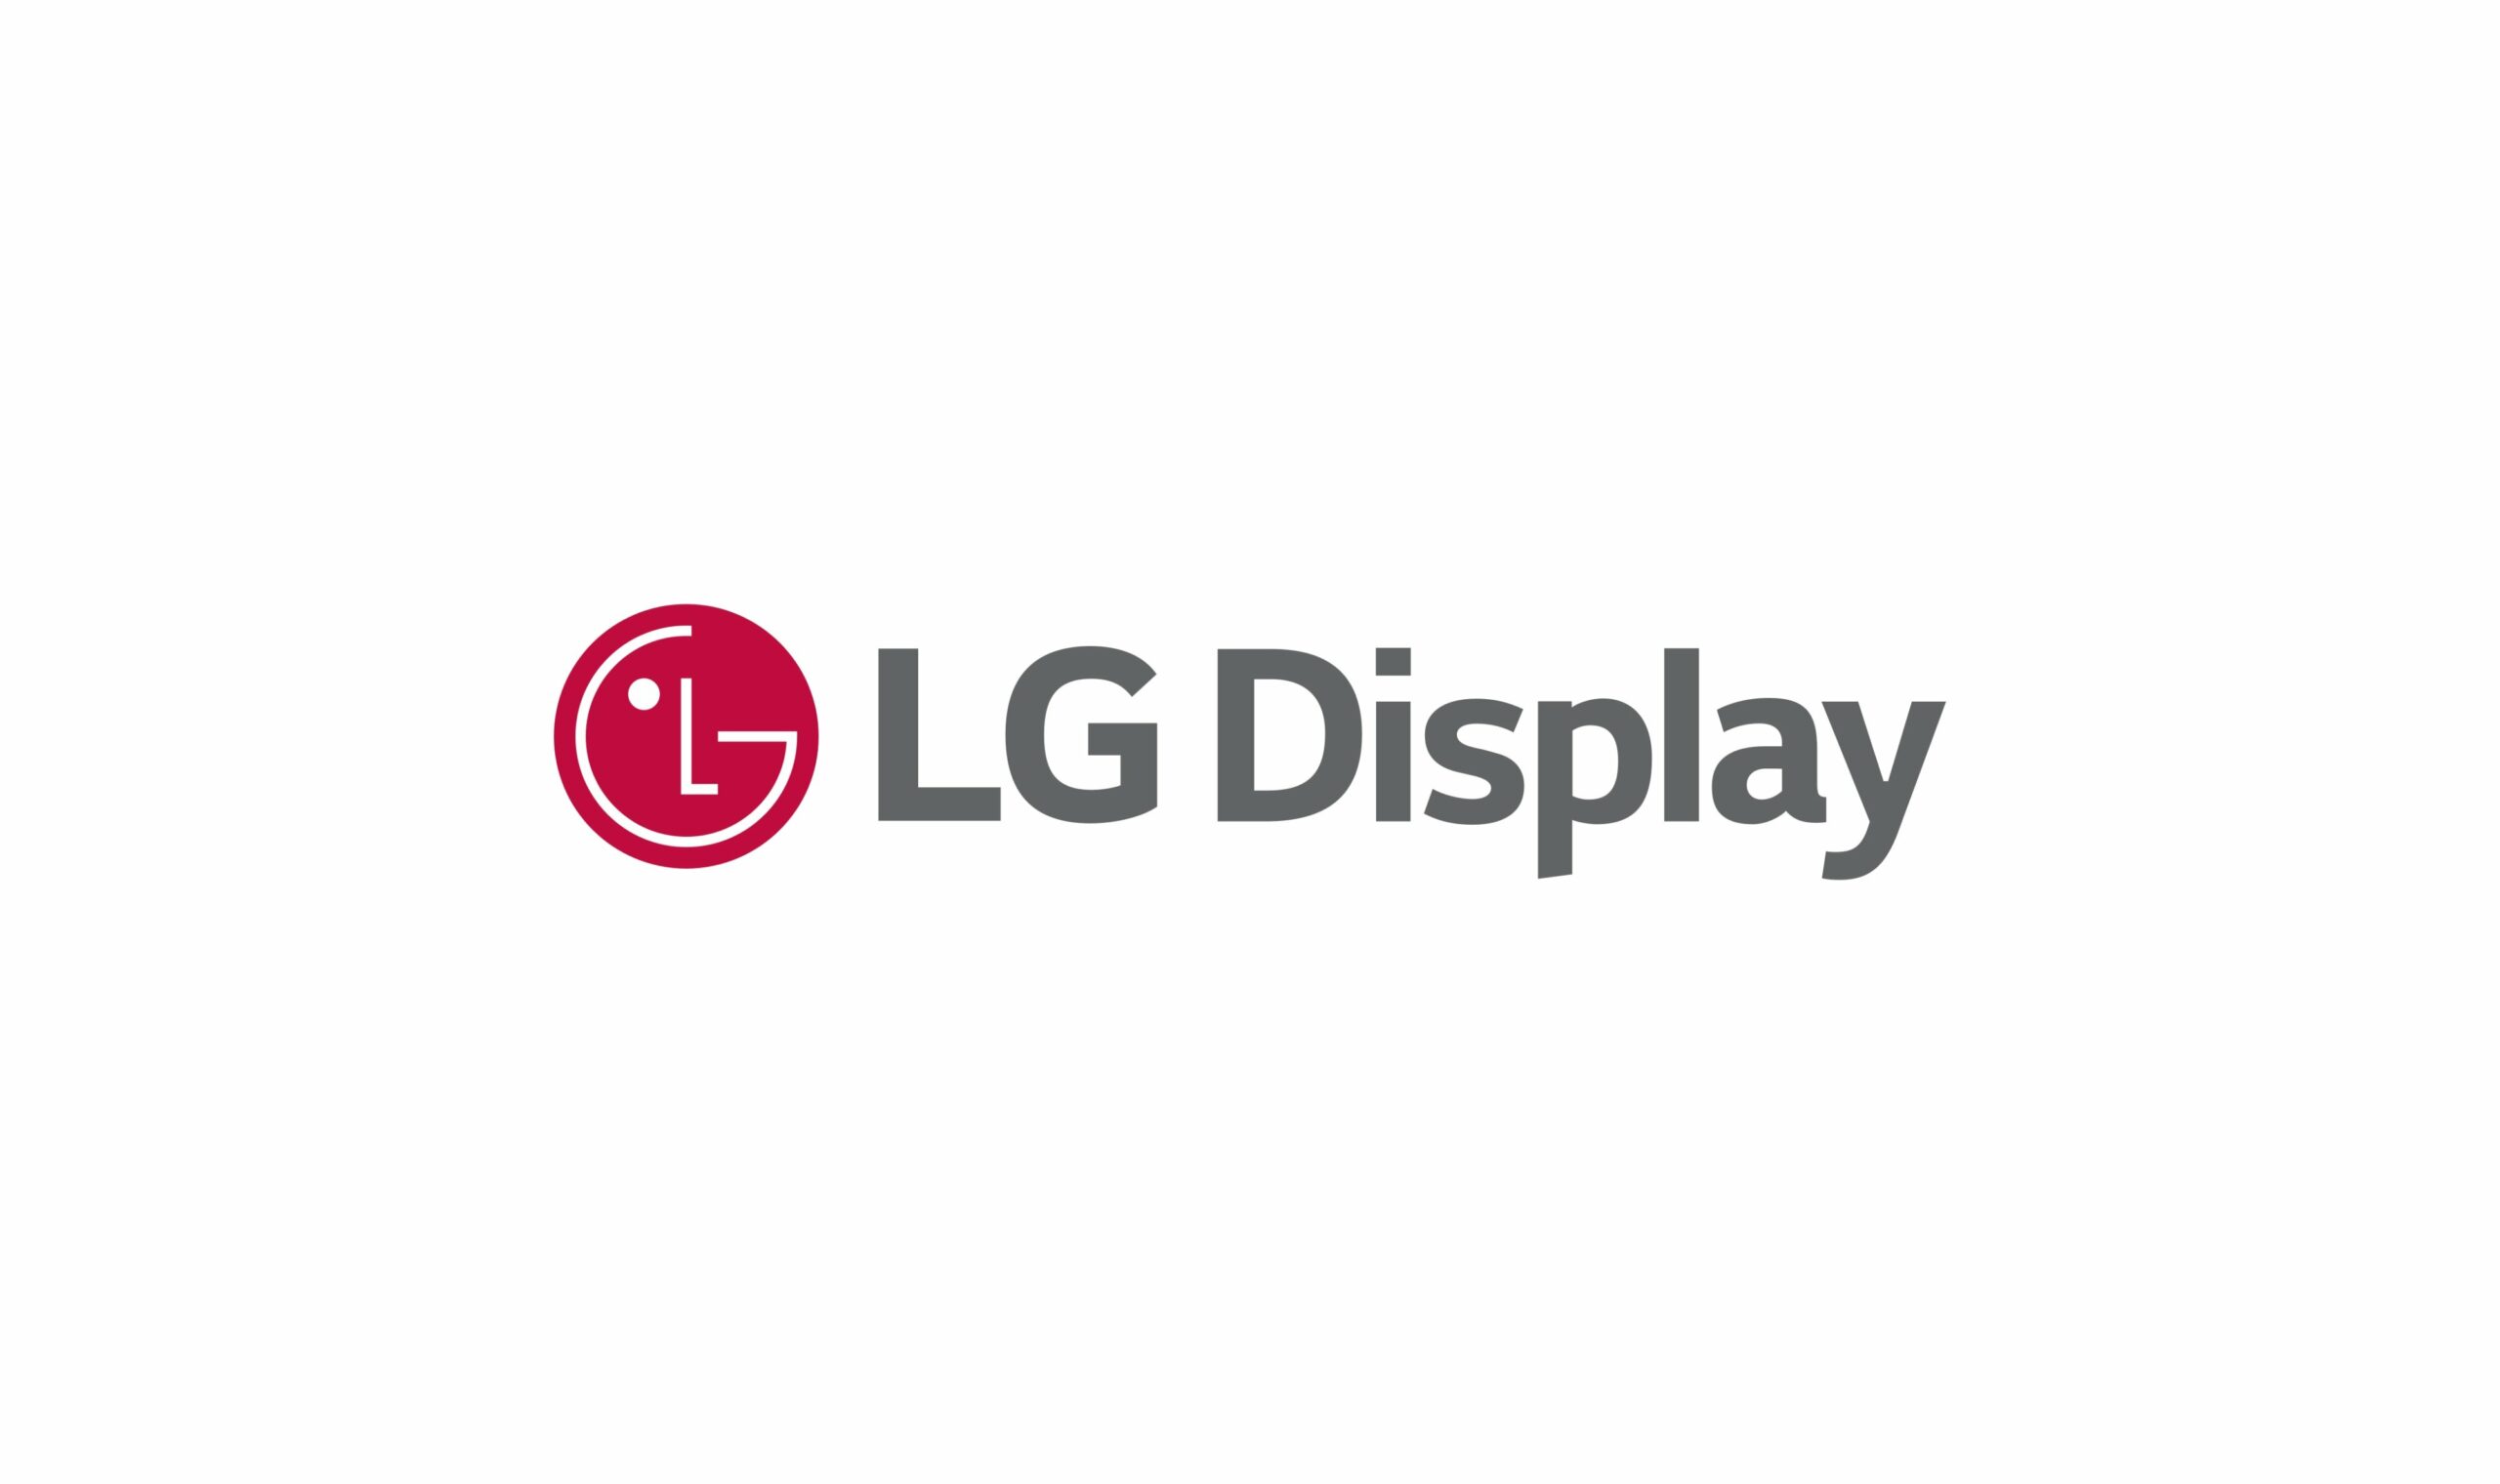 LG prikazan logotip zaslona